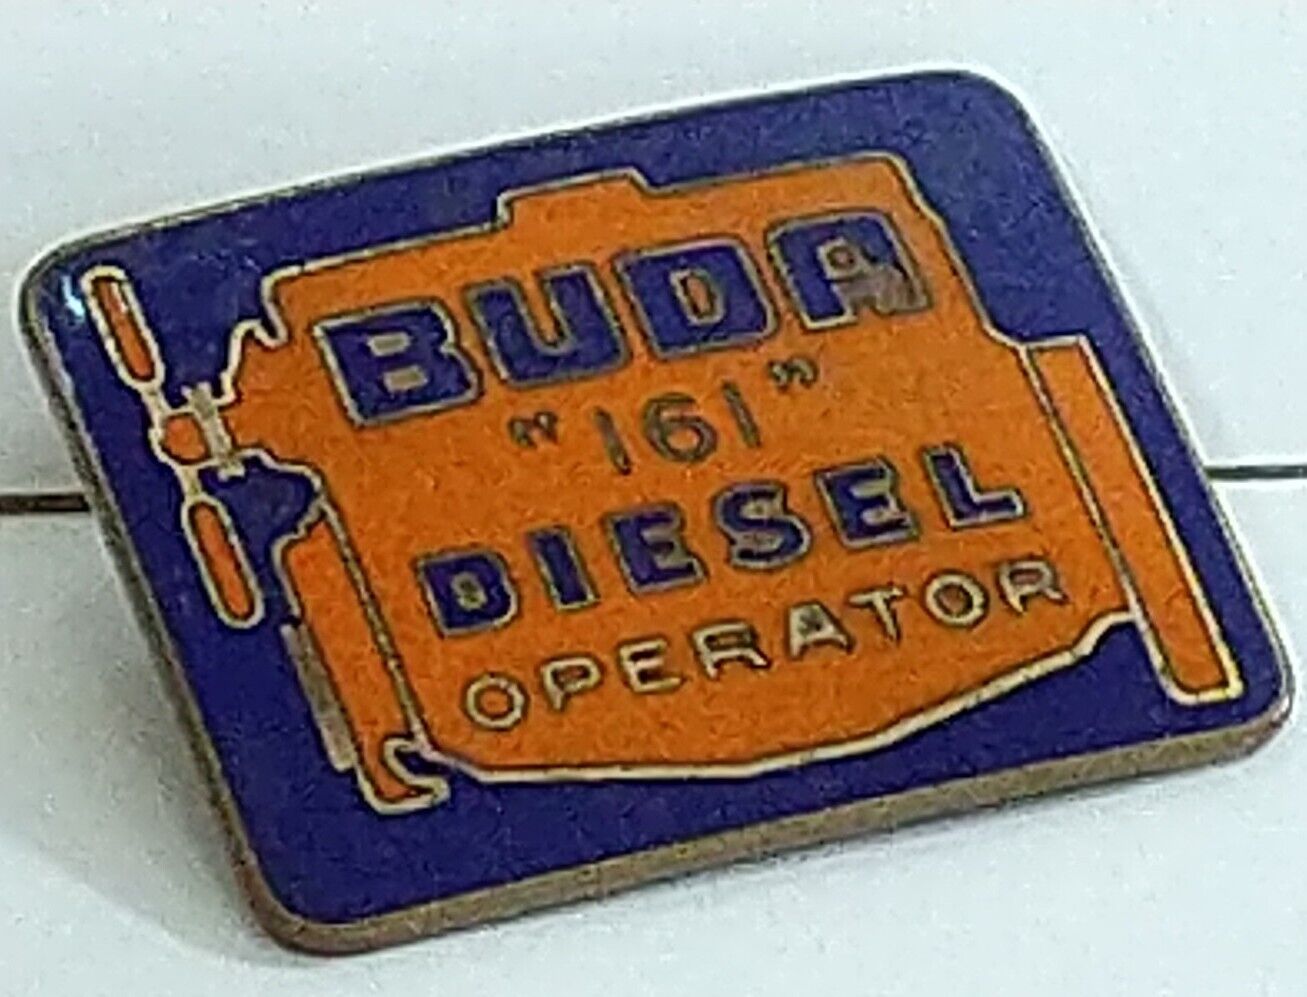 Buda 161 Diesel Operator Pin Enamel Badge Advertise Allis Chalmers 1920 Antique